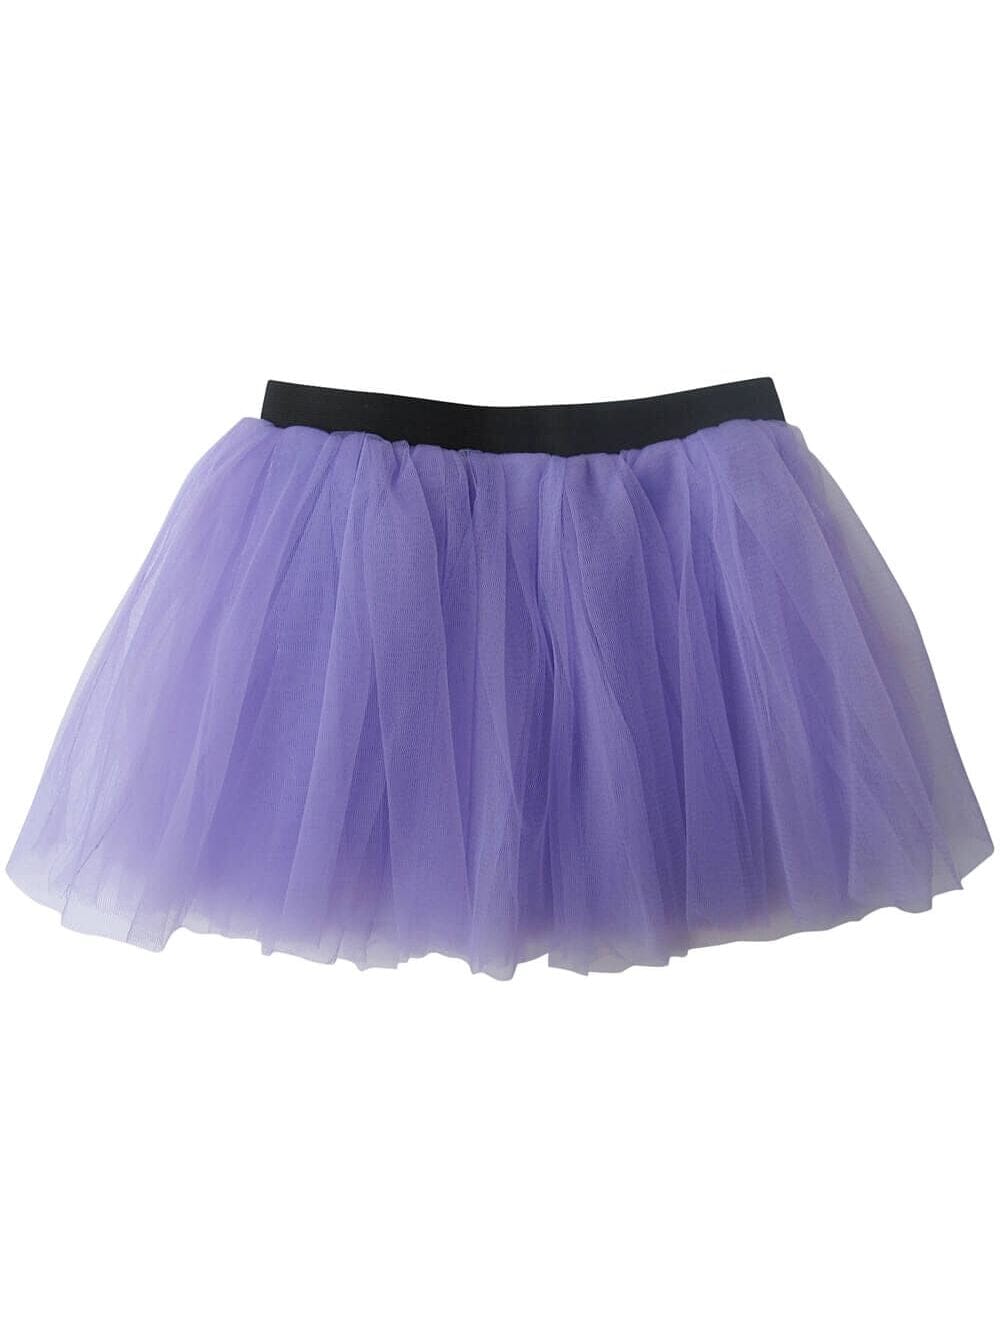 Lavender Adult Size Women's 5K Running Tutu Skirt Costume - Sydney So Sweet